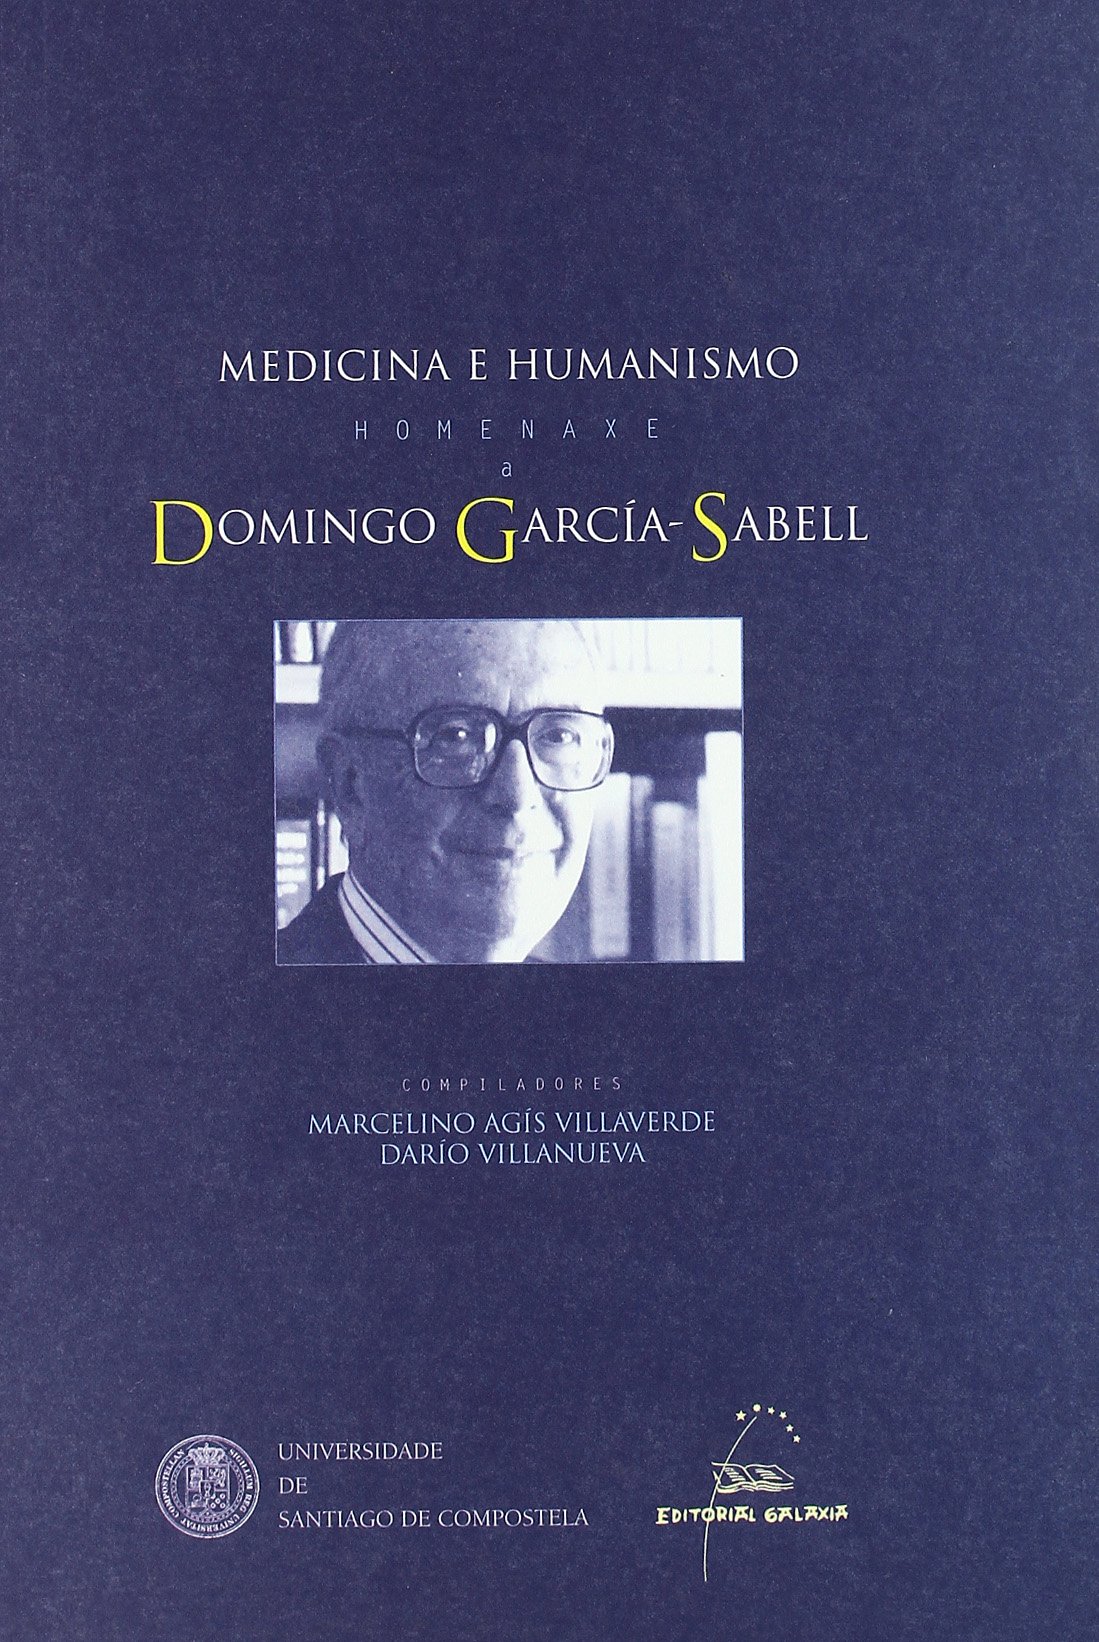 Imagen de portada del libro Medicina e humanismo